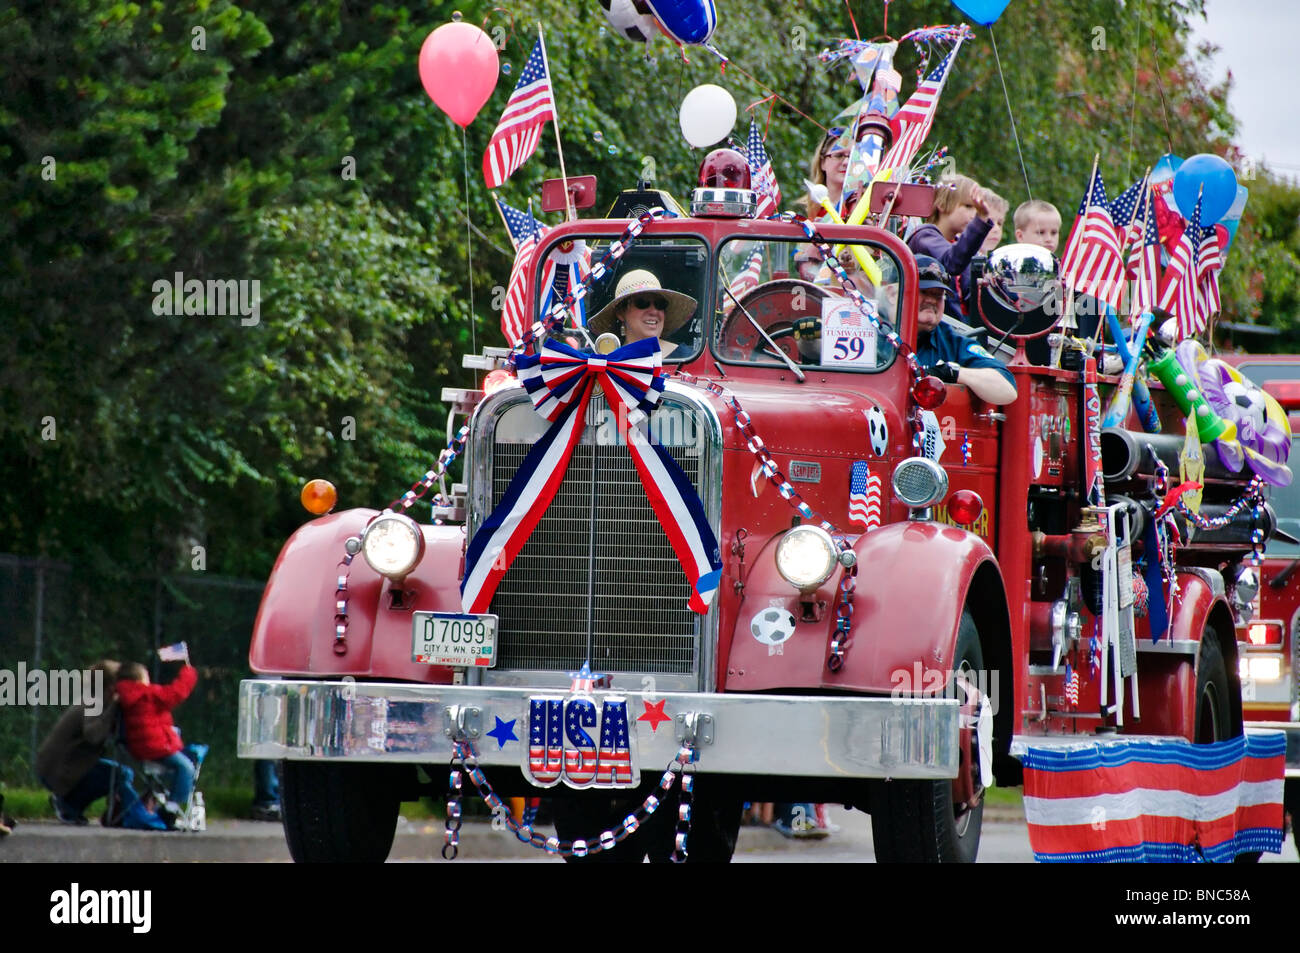 Ein Feuerwehrauto dekoriert für den 4. Juli Parade auf der Straße in Tumwater, Washington für eine jährliche Familienfest bewegt. Stockfoto